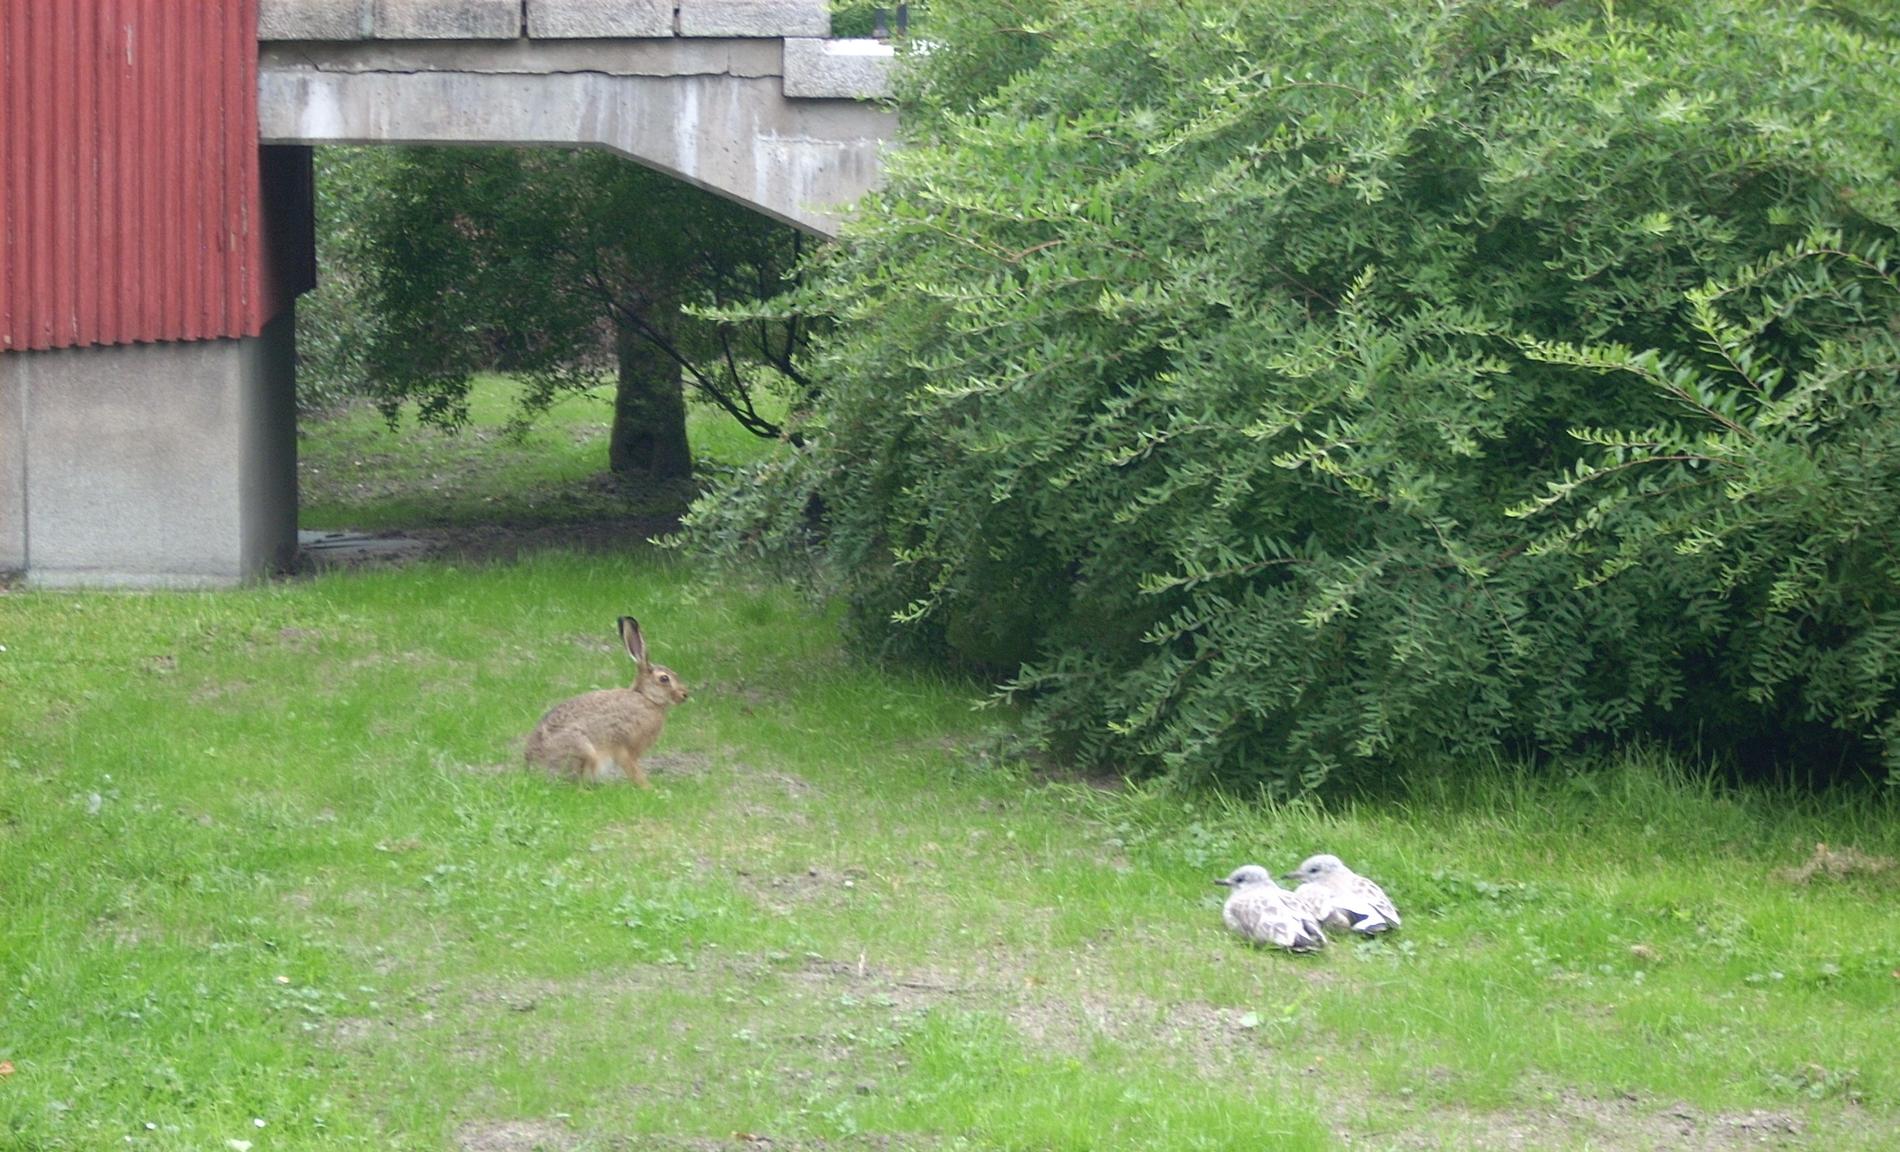 Hare och måsungar planerar busstreck en solig eftermiddag utanför polishuset vid Humanisten, Göteborg.